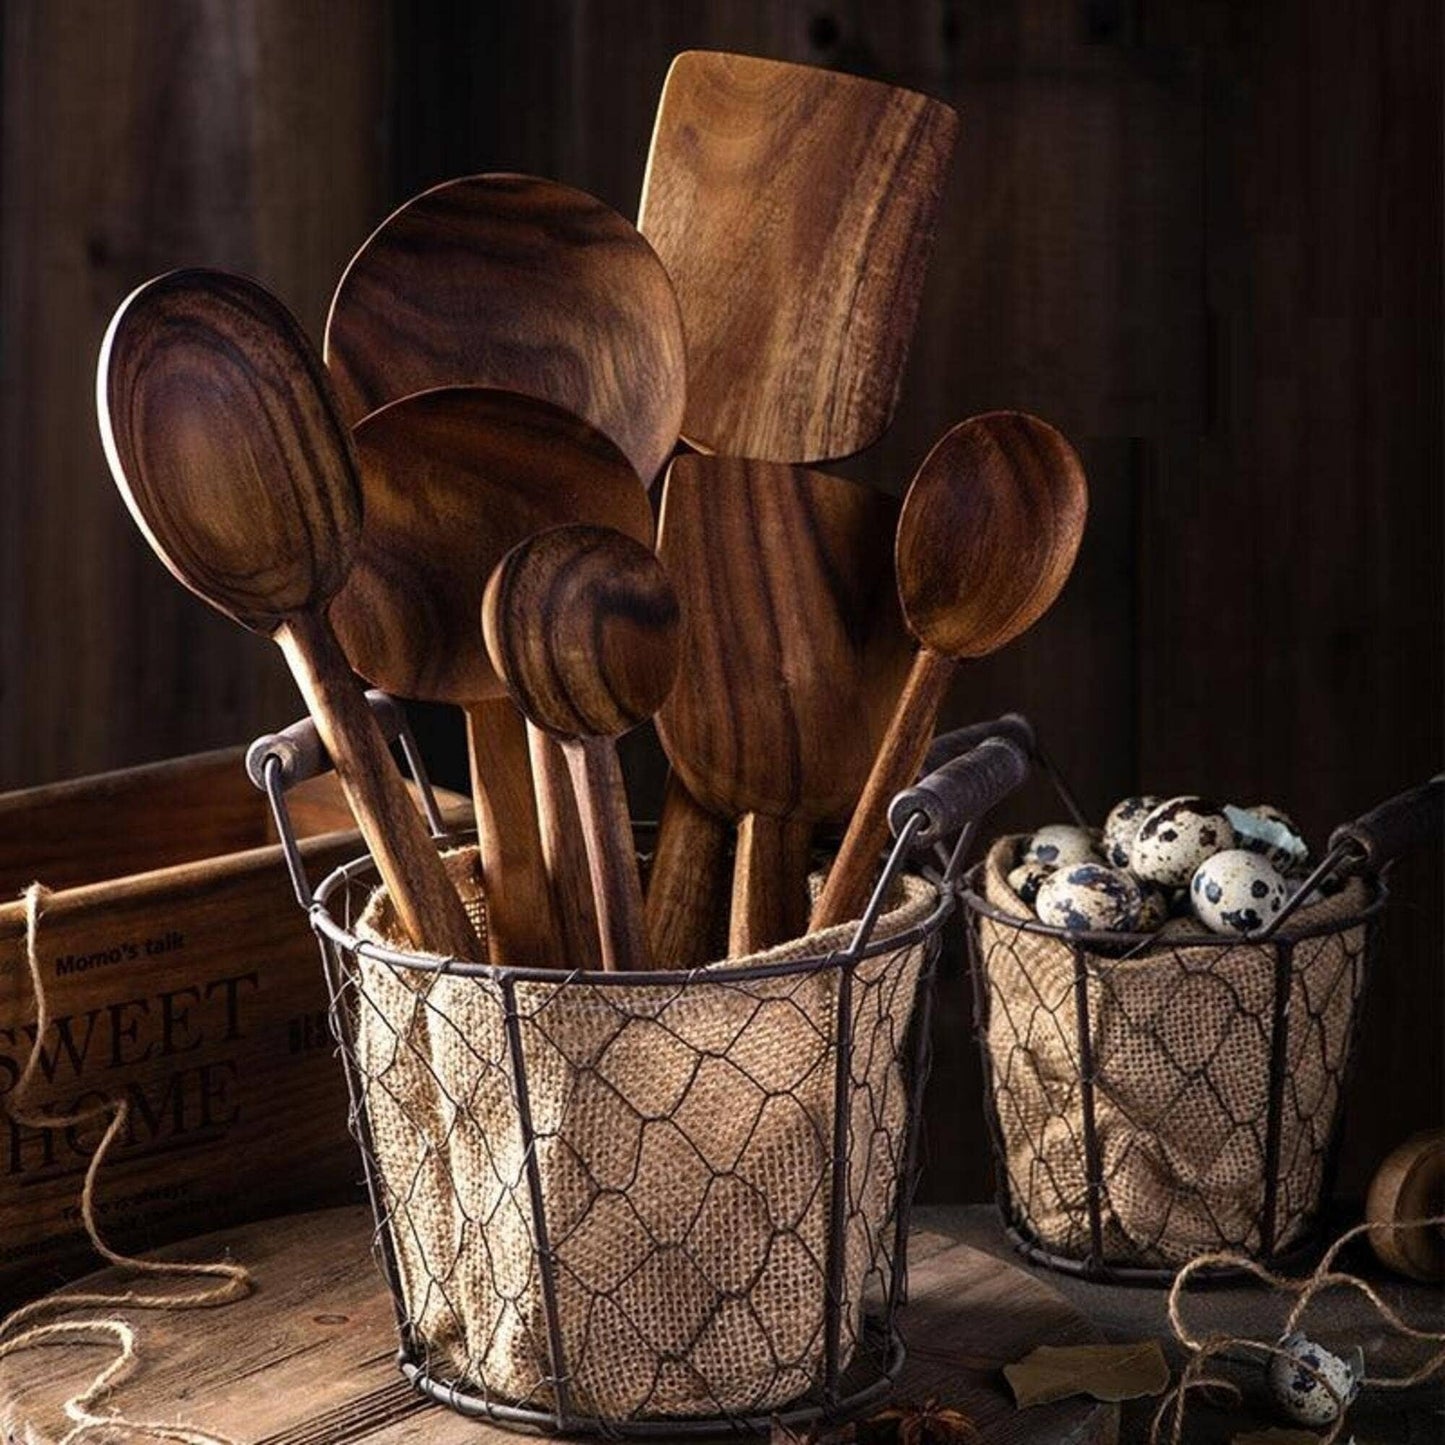 Big Wooden Spoon | Teak